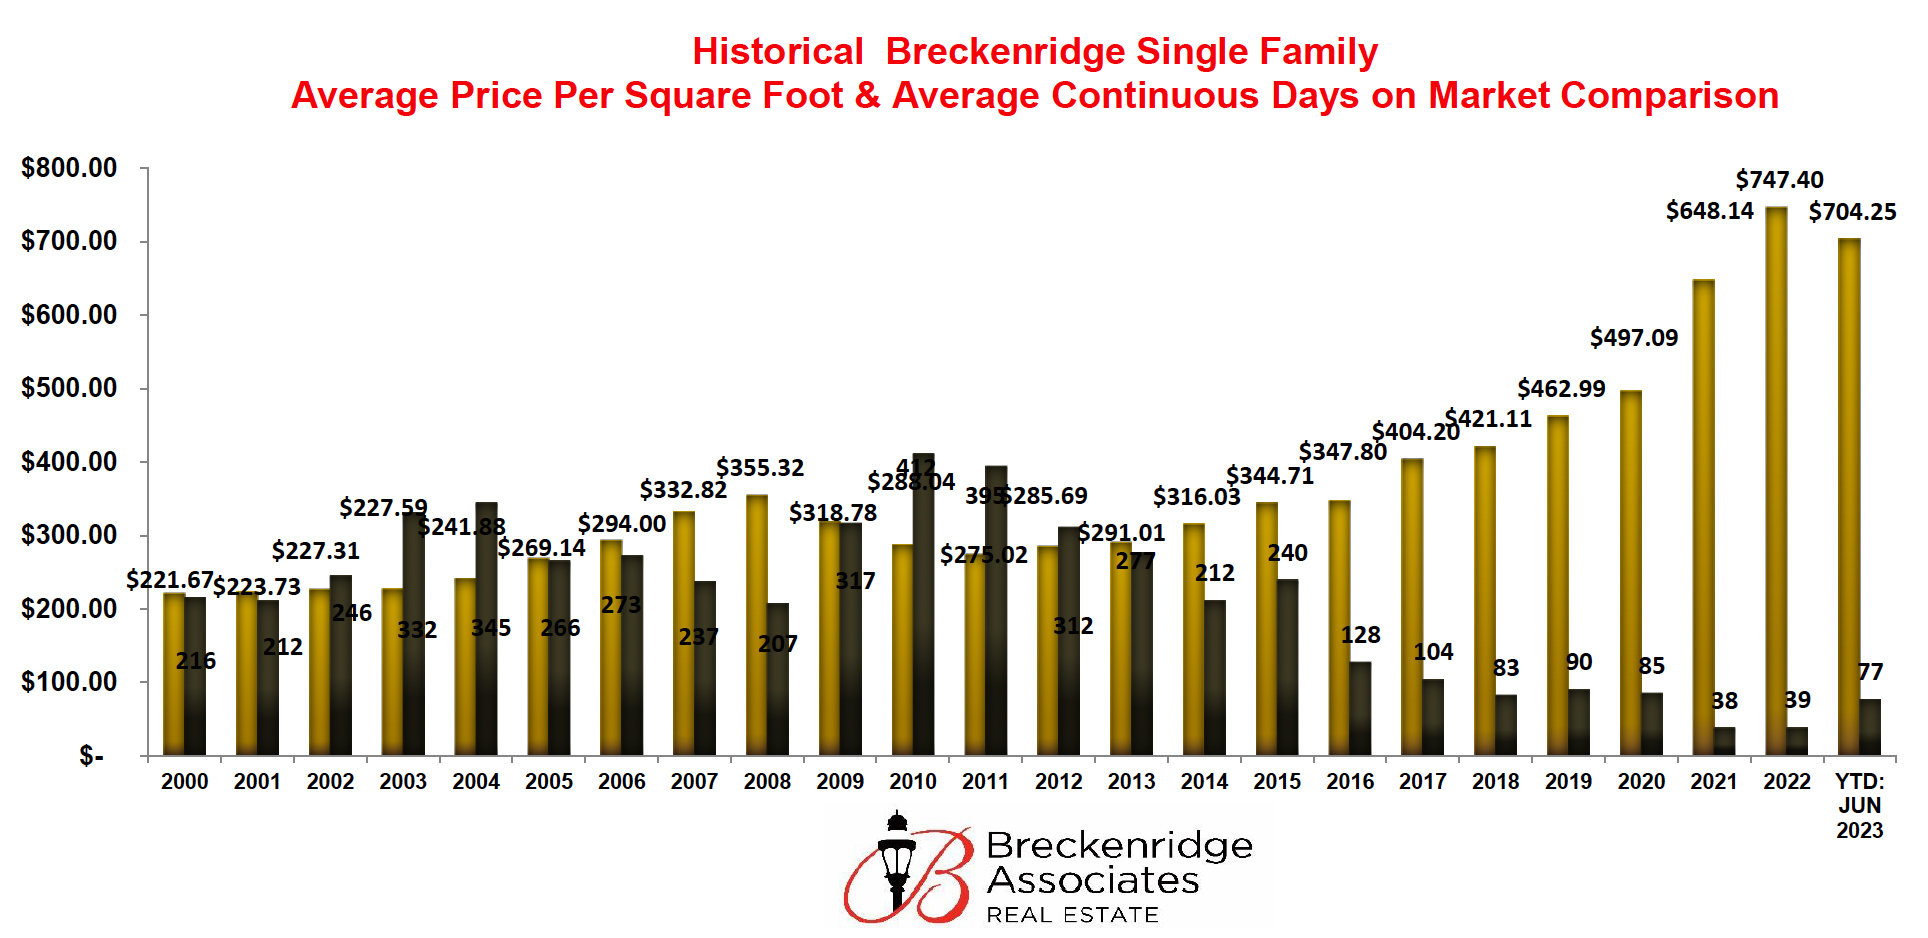 Average Price Per Square Foot for Single Family Homes in Breckenridge, Colorado